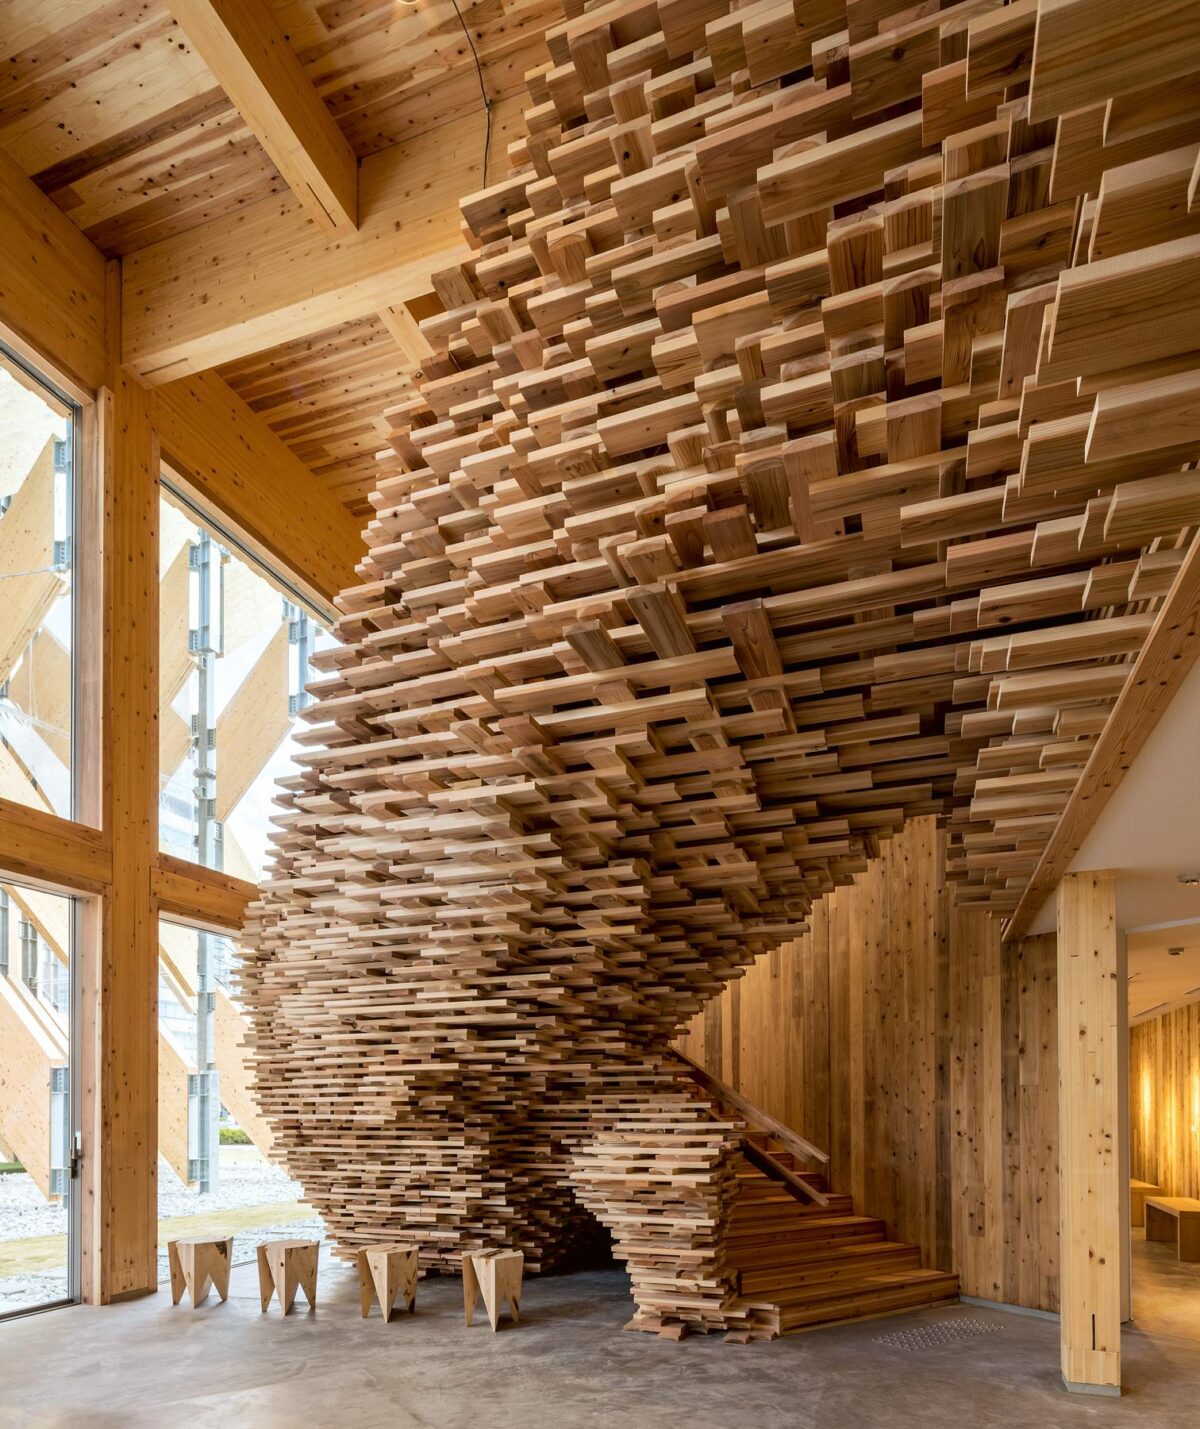 Arquitectura efímera: pabellones internacionales en madera